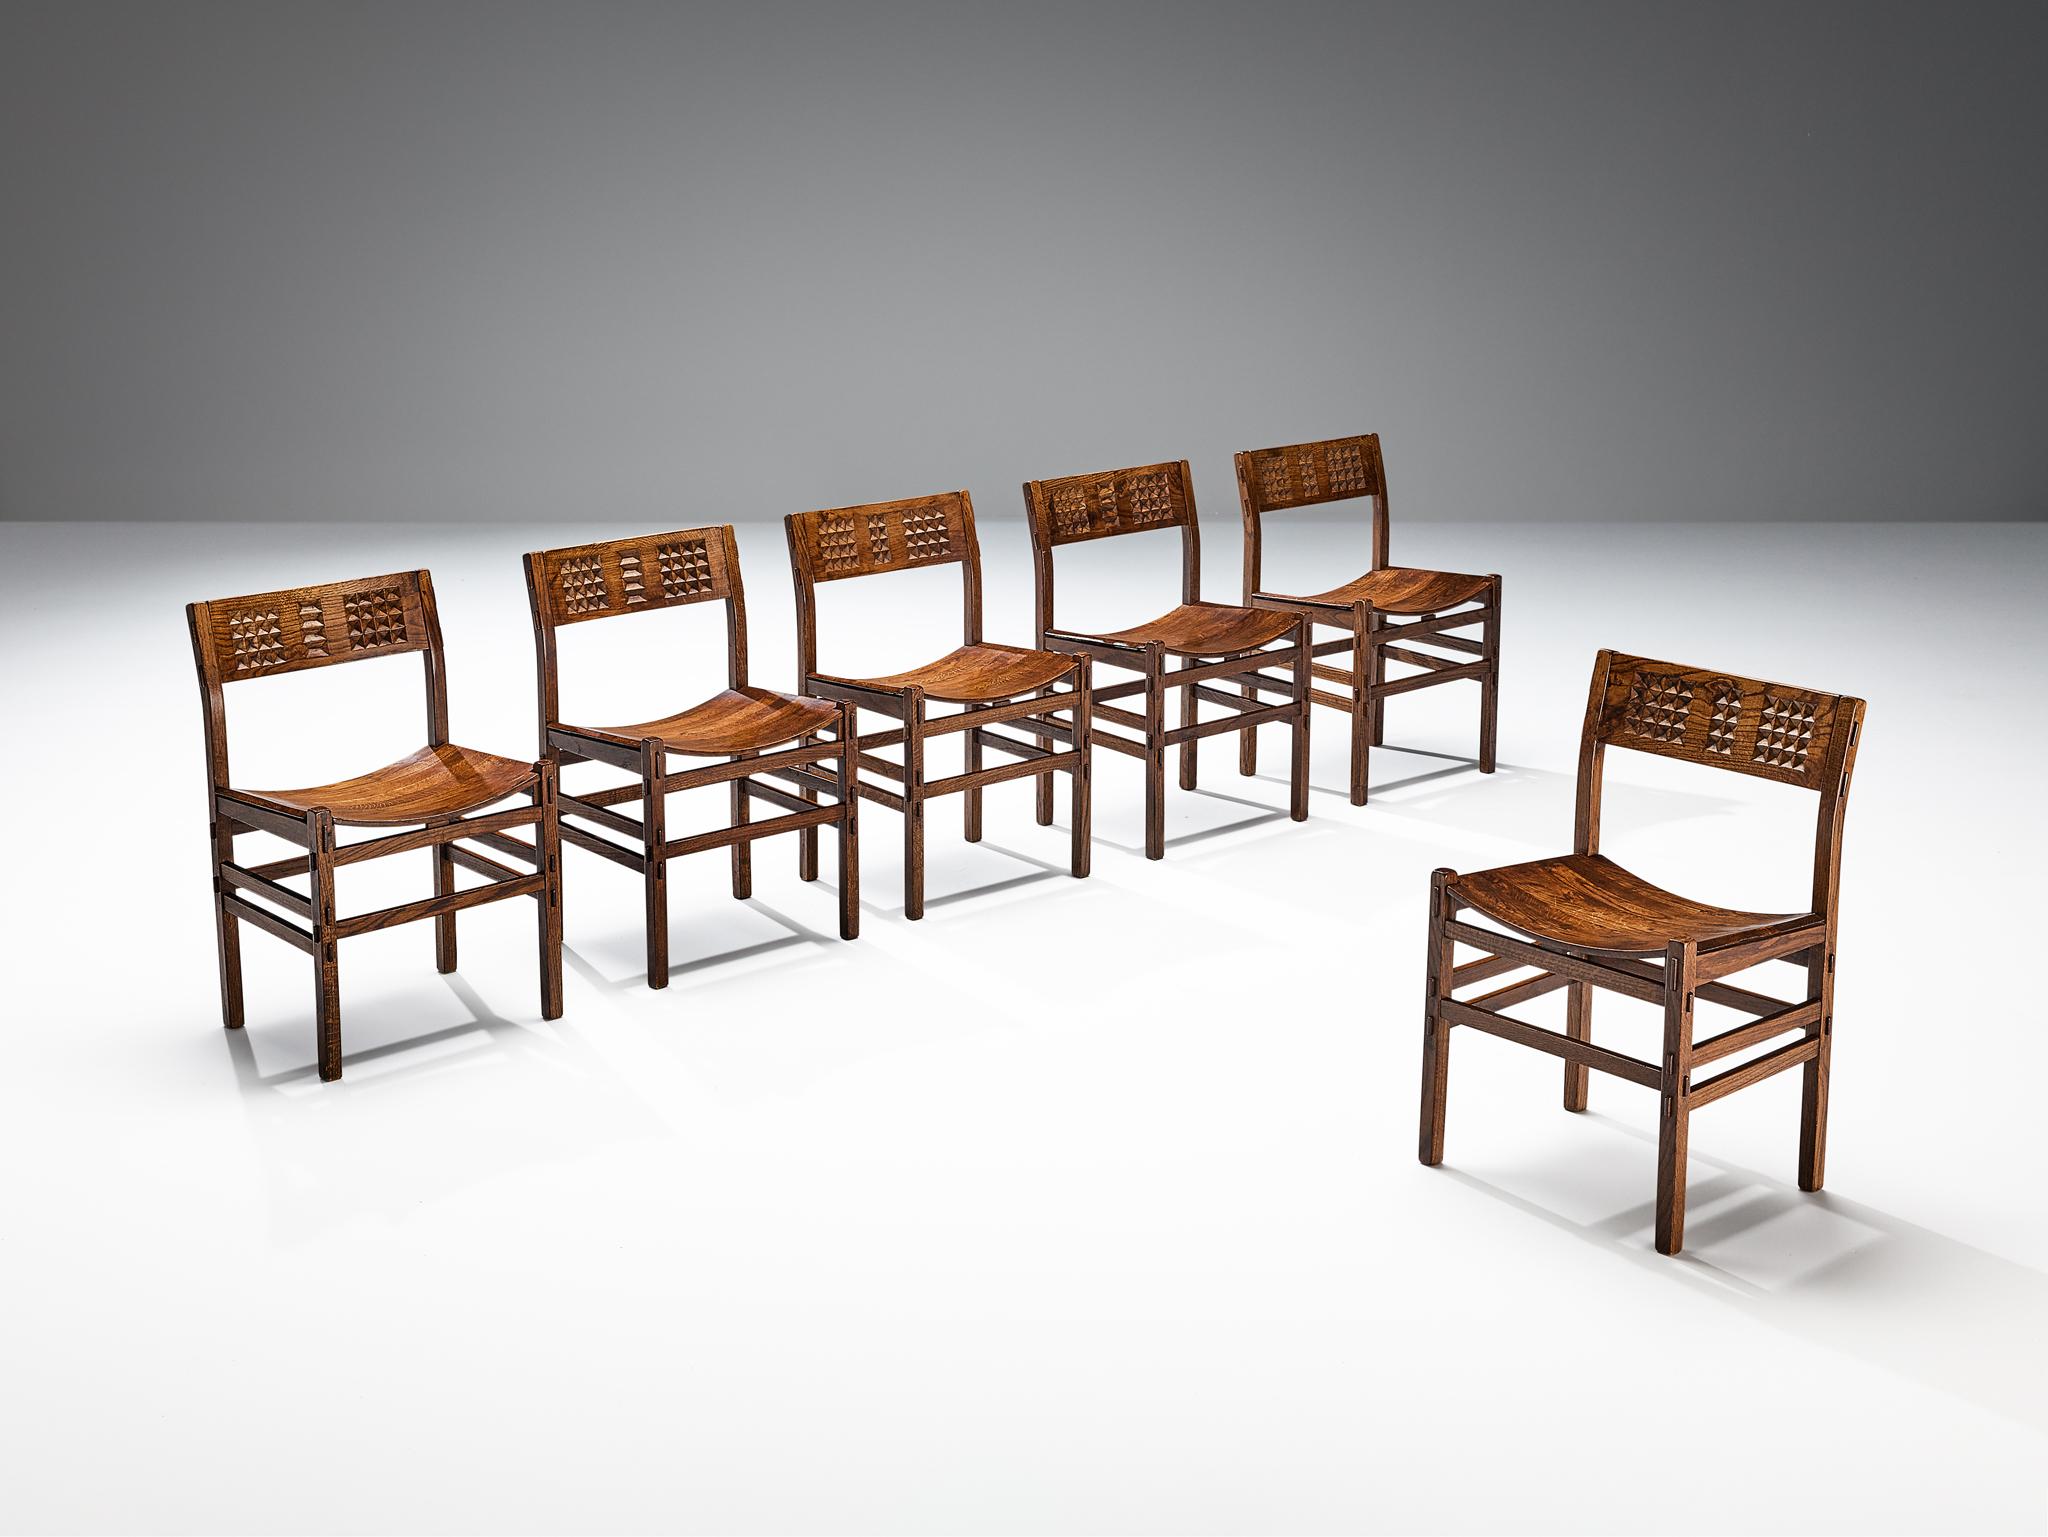 Satz von sechs Esszimmerstühlen, Eiche gebeizt, Italien, 1970er Jahre.

Schöner Satz von Eichenstühlen mit geometrisch geschnitzten Details in den Rückenlehnen. Die Seiten und Rückseiten der Stuhlrahmen sind mit mehreren dünnen Latten versehen, die